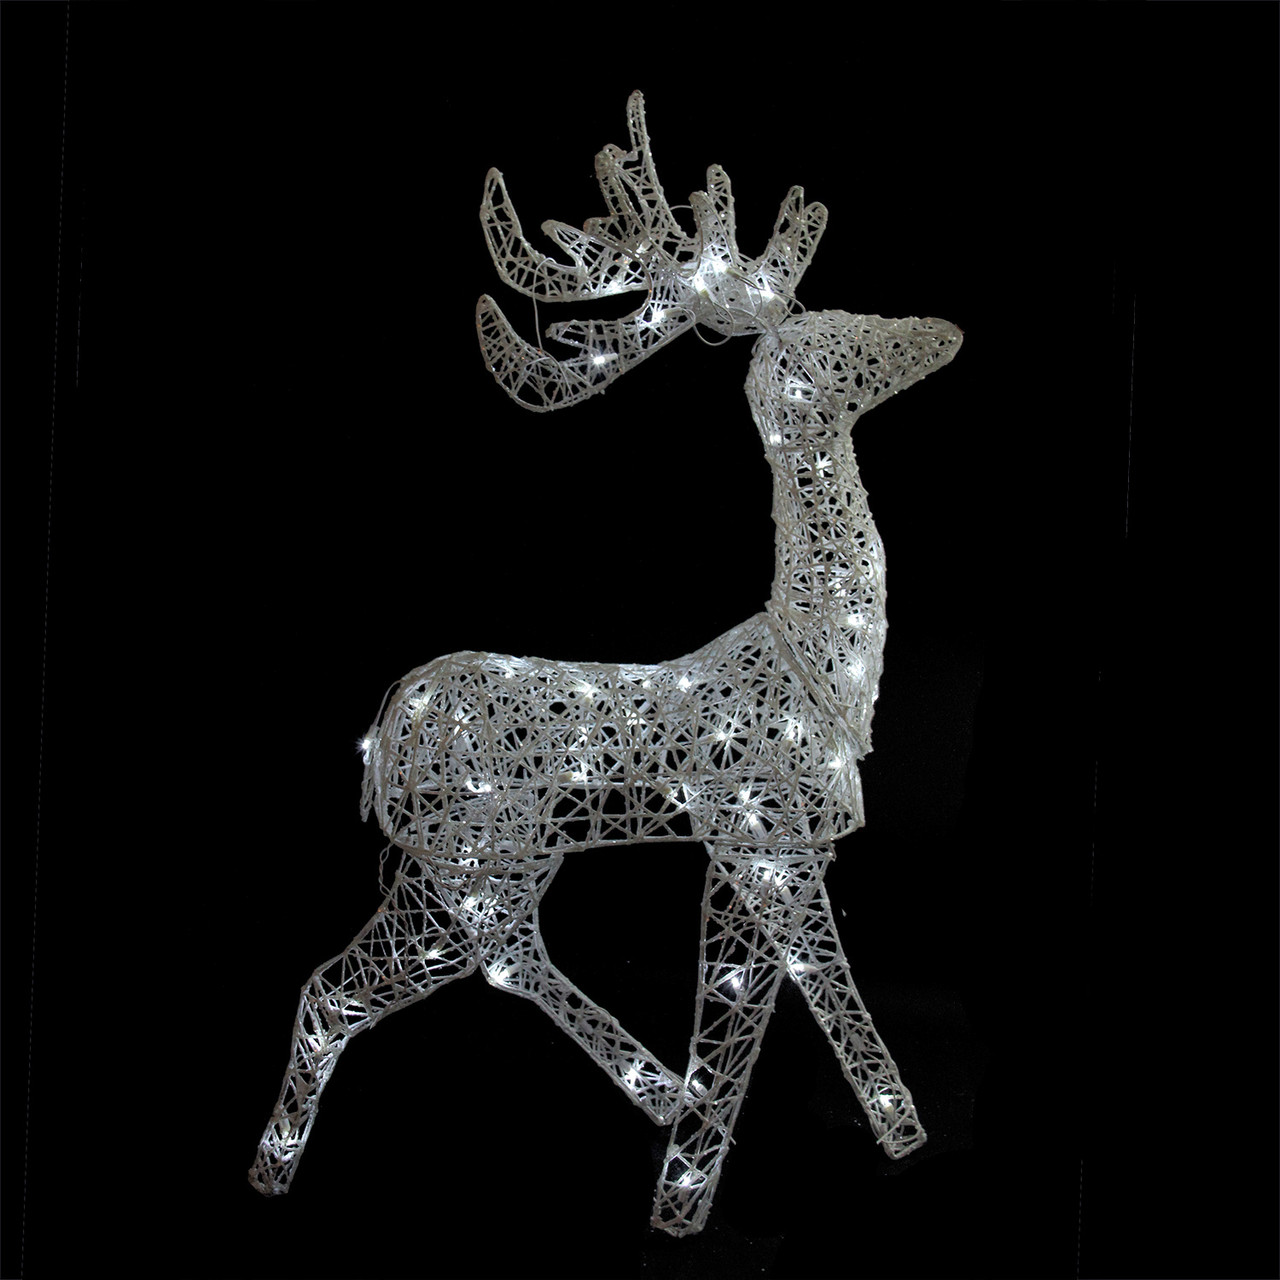 52" LED Lighted Elegant White Glittered Reindeer Christmas